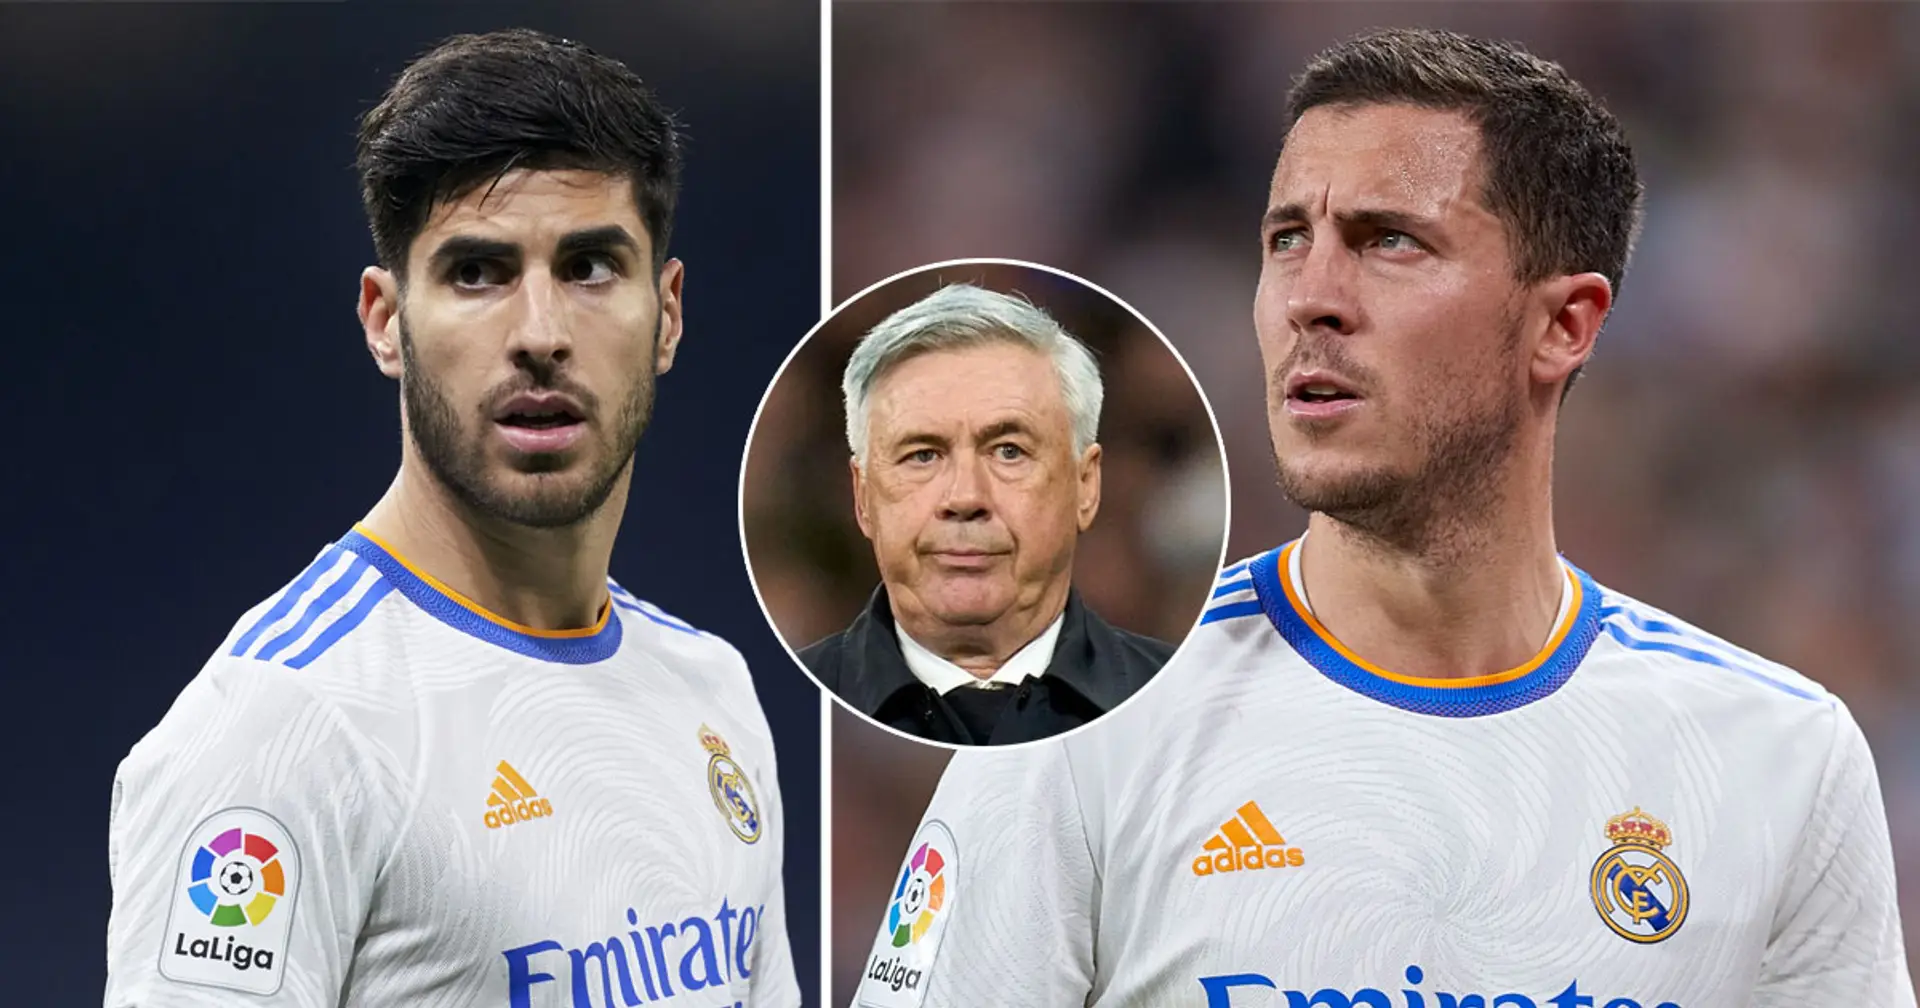 4 jugadores desfavorecidos continuarán en el Real Madrid debido a falta de ofertas (fiabilidad: 4 estrellas)